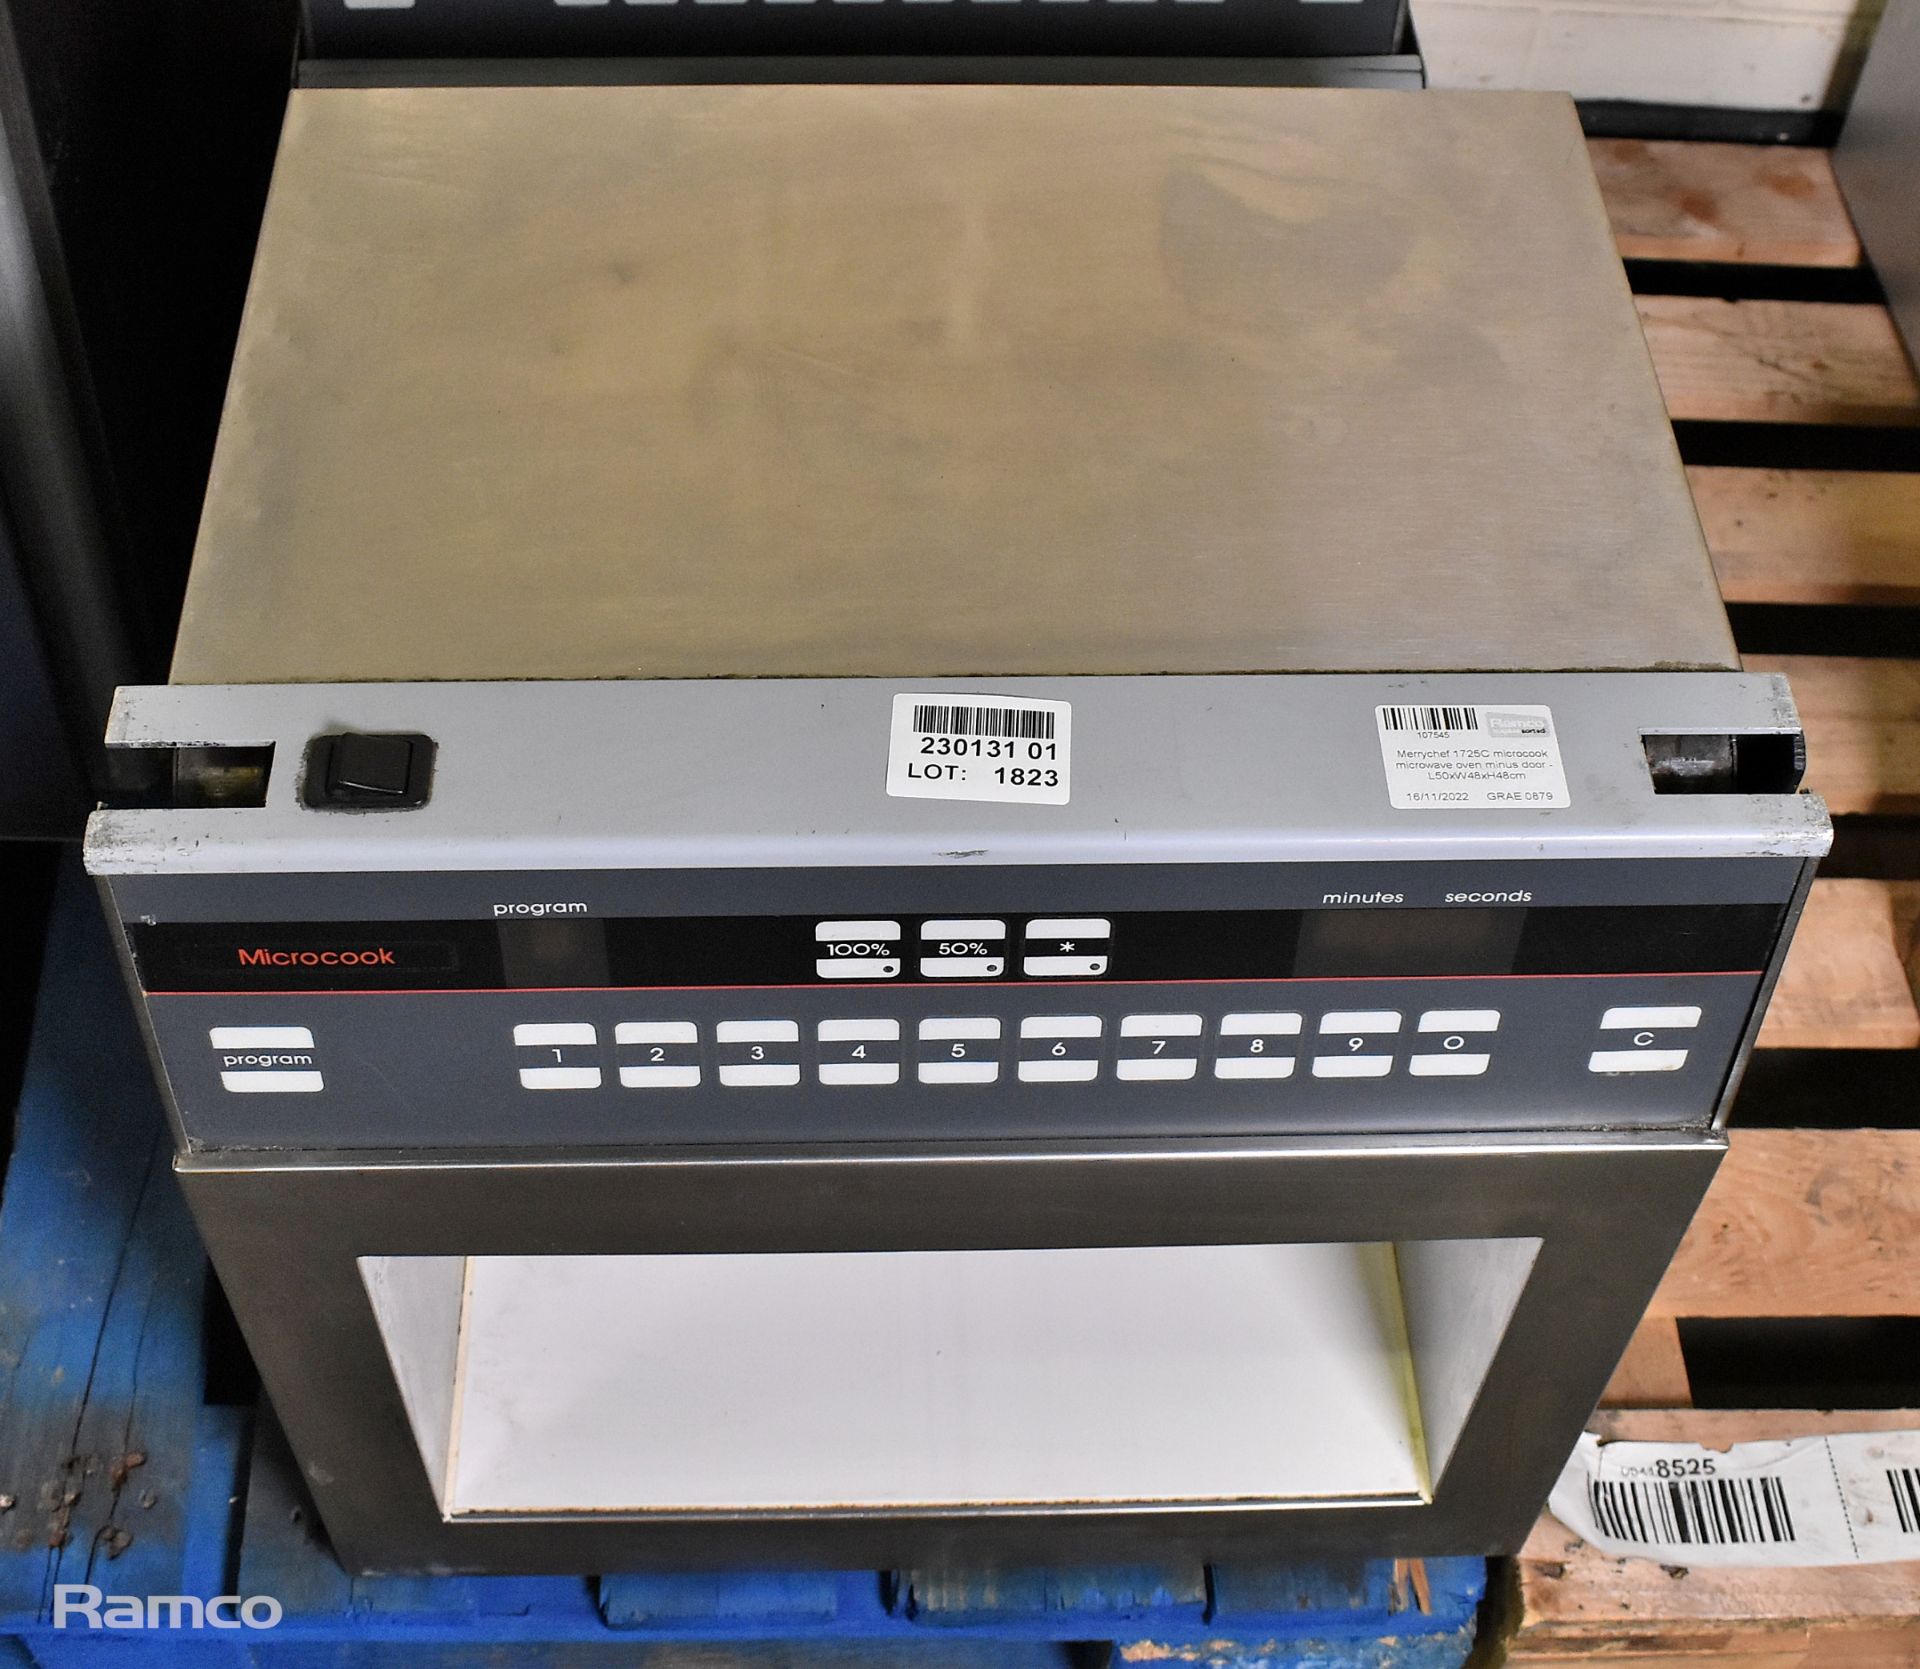 Merrychef 1725C microcook microwave oven - no door - L50xW48xH48cm - Image 3 of 6